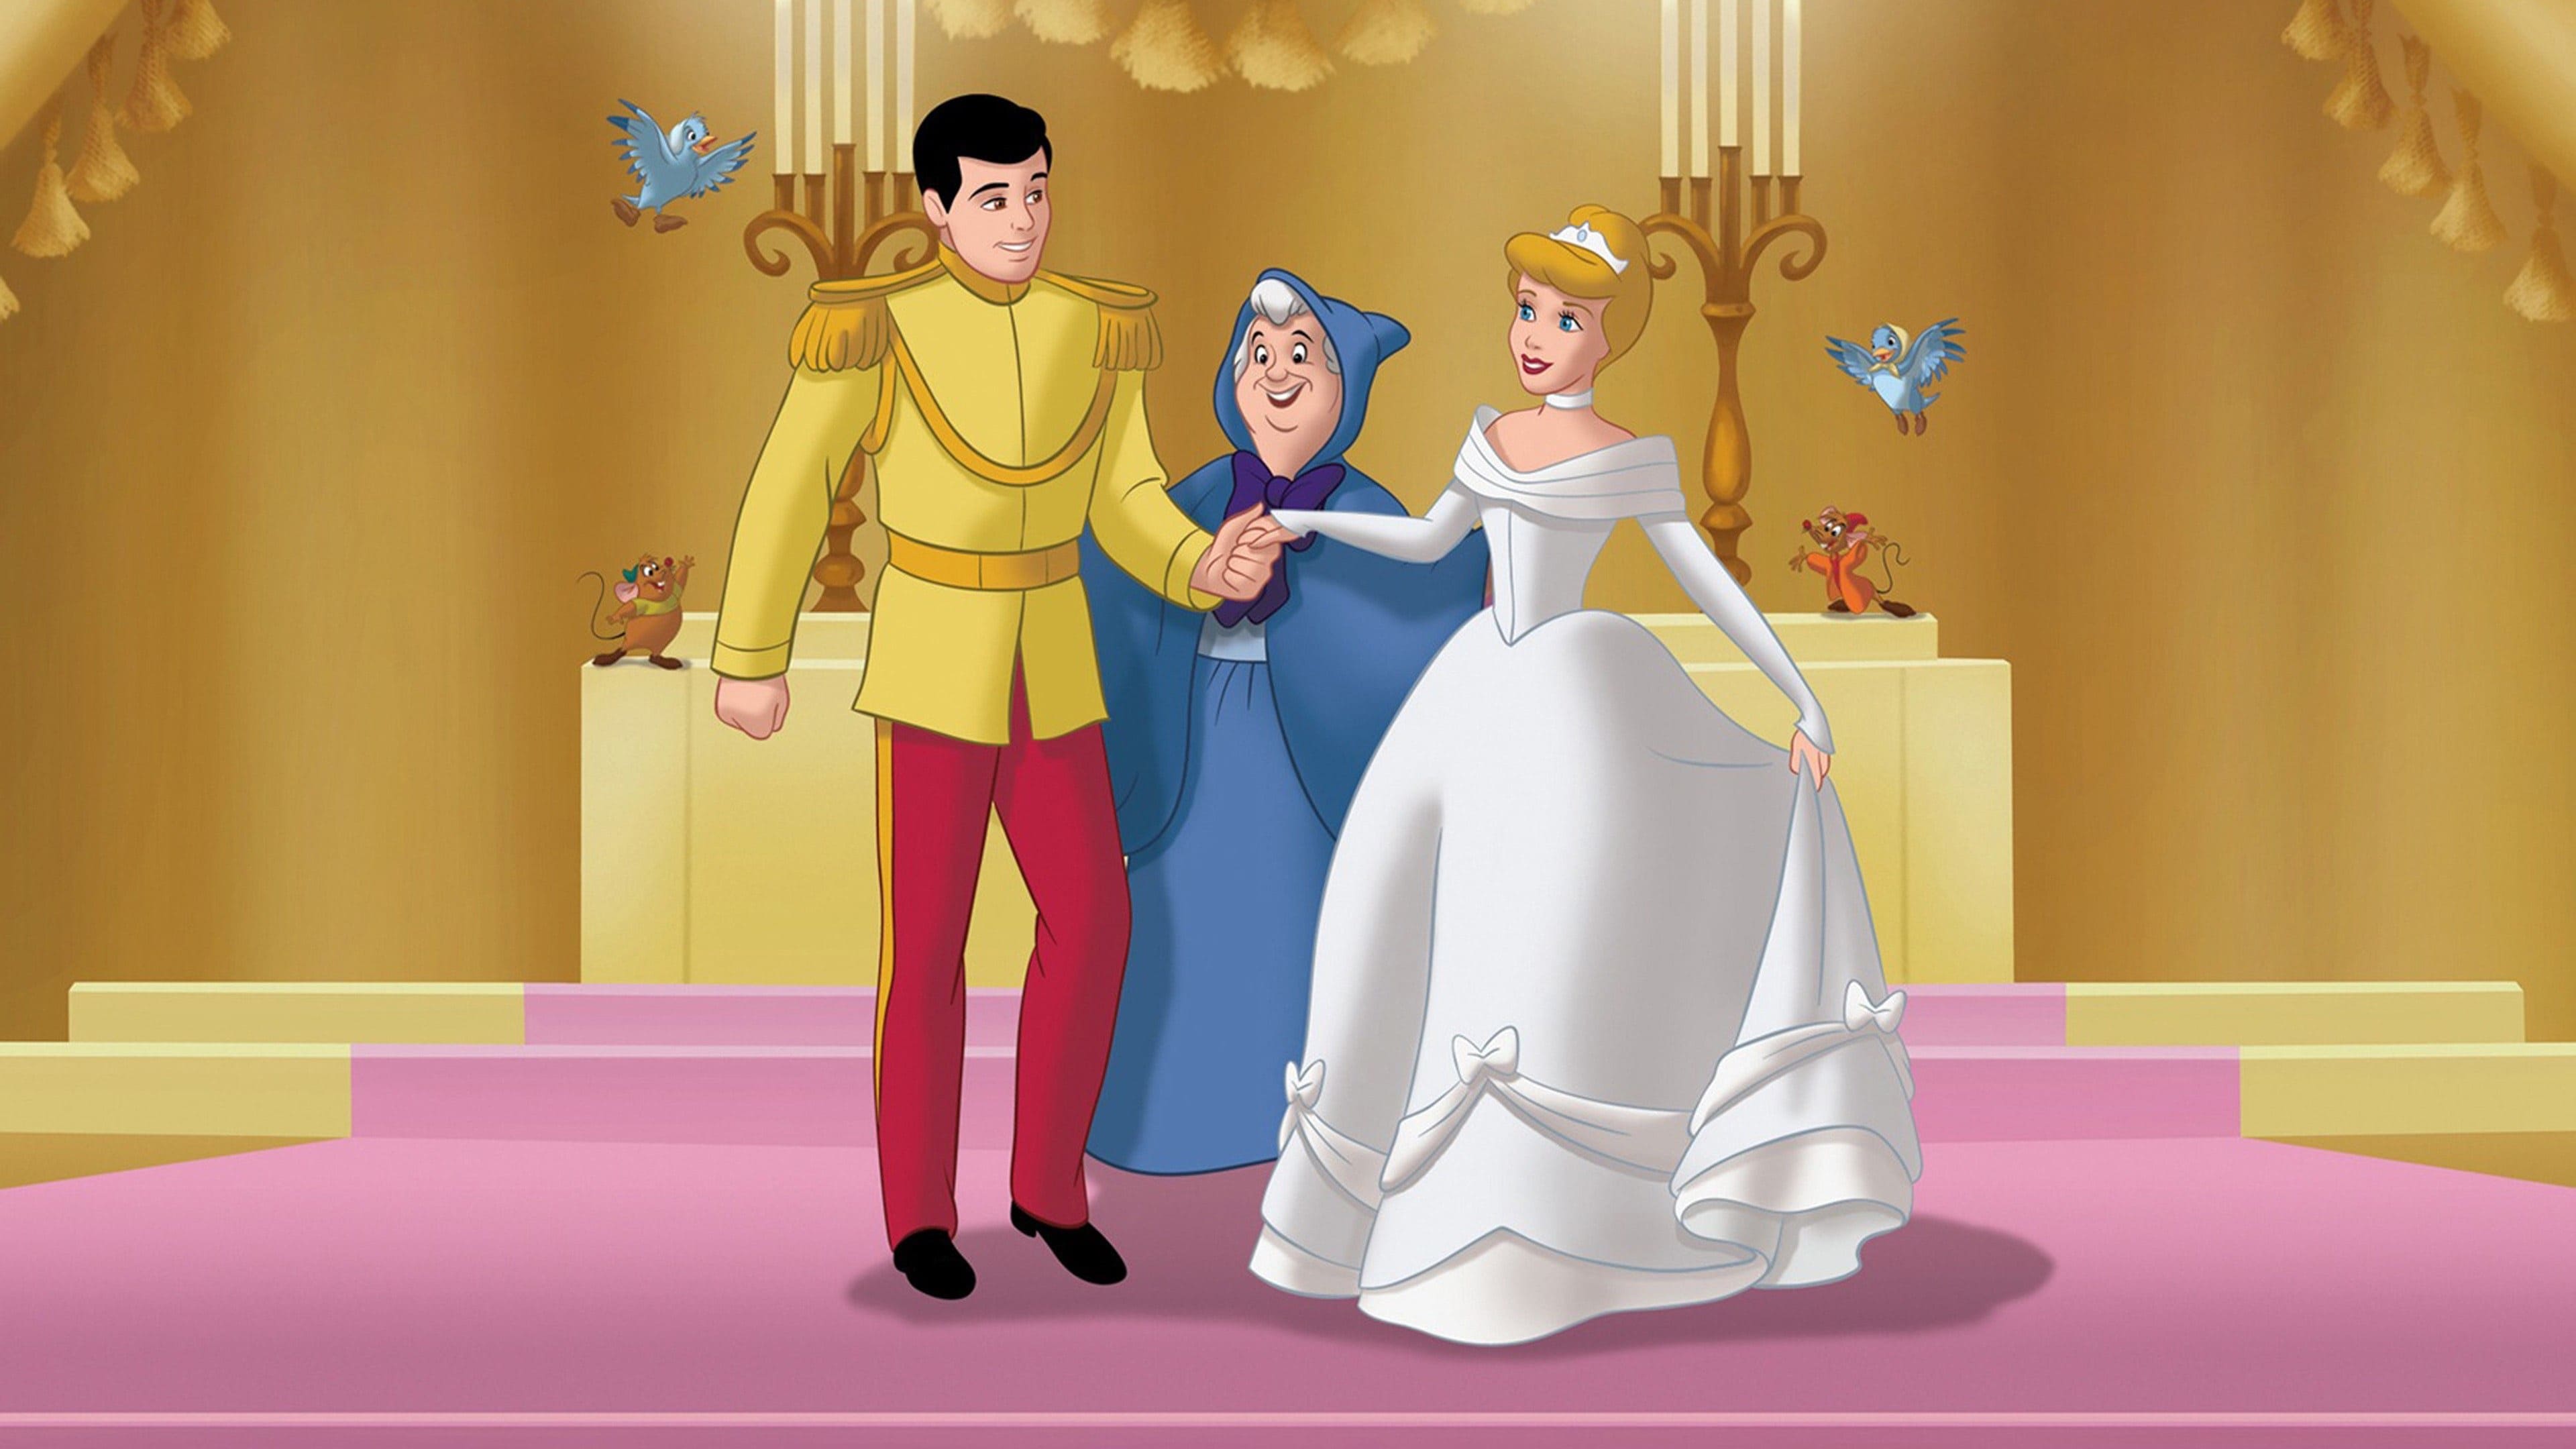 Cinderella - Wahre Liebe siegt (2007)